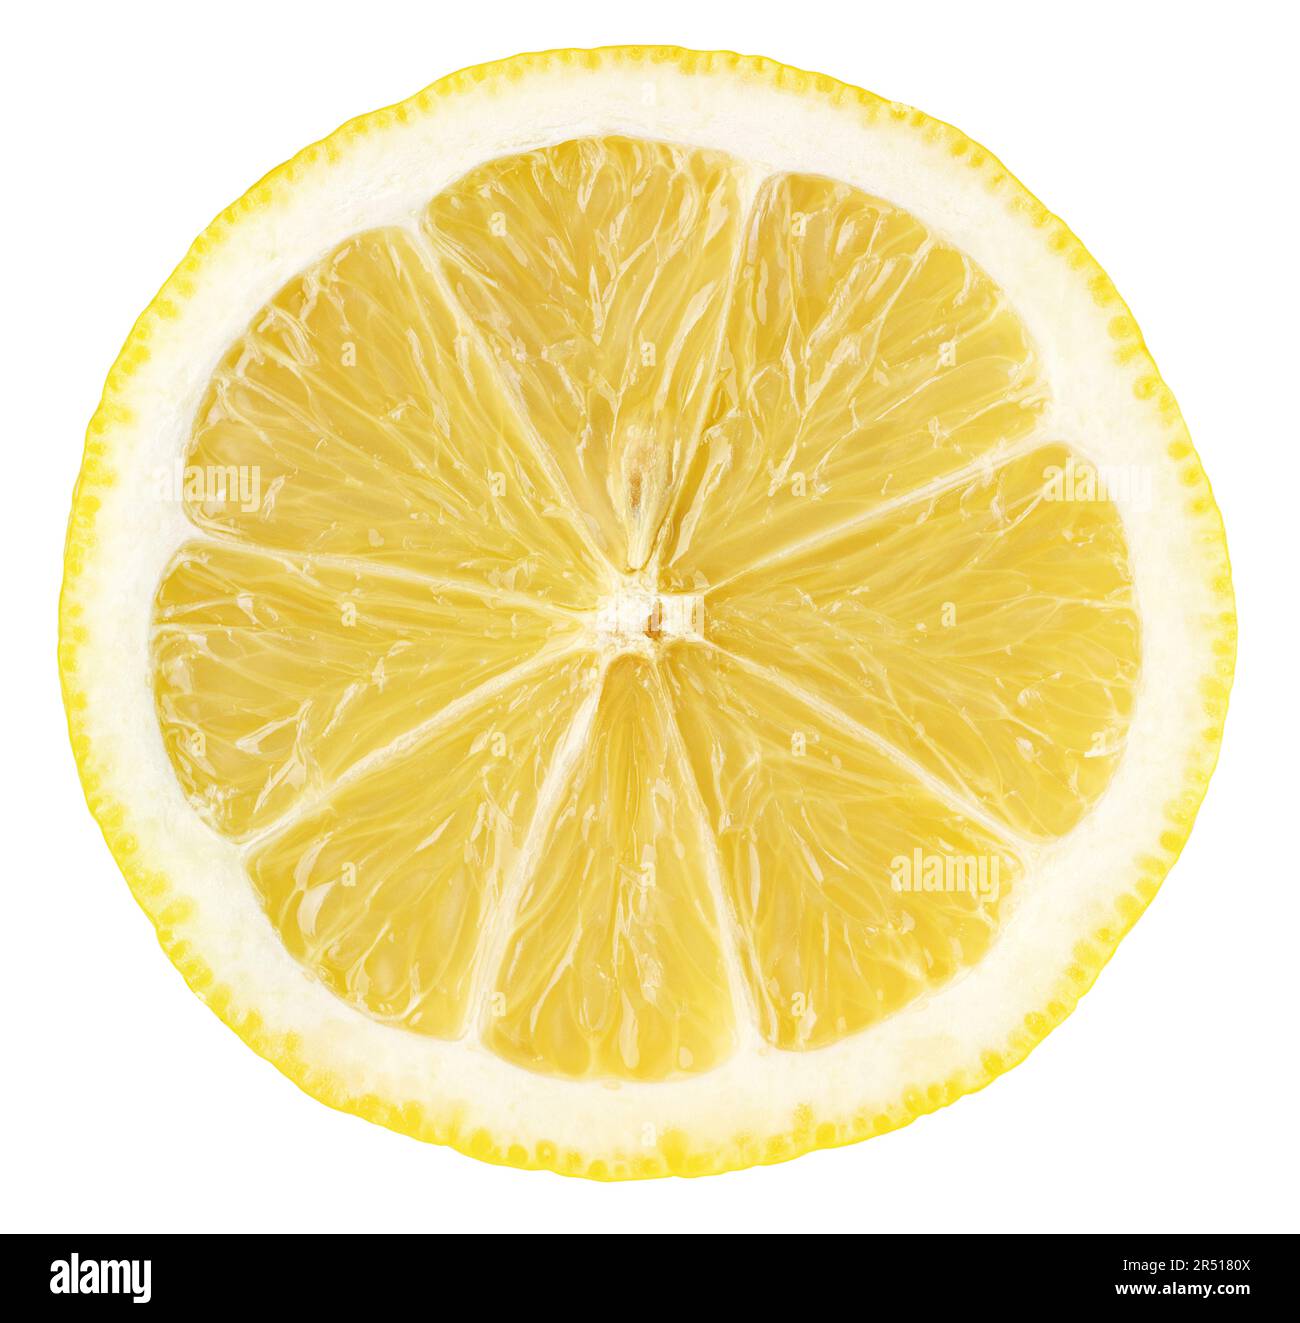 Fetta di limone agrumi isolato su sfondo bianco con percorso di ritaglio. Fetta di limone con semi Foto Stock